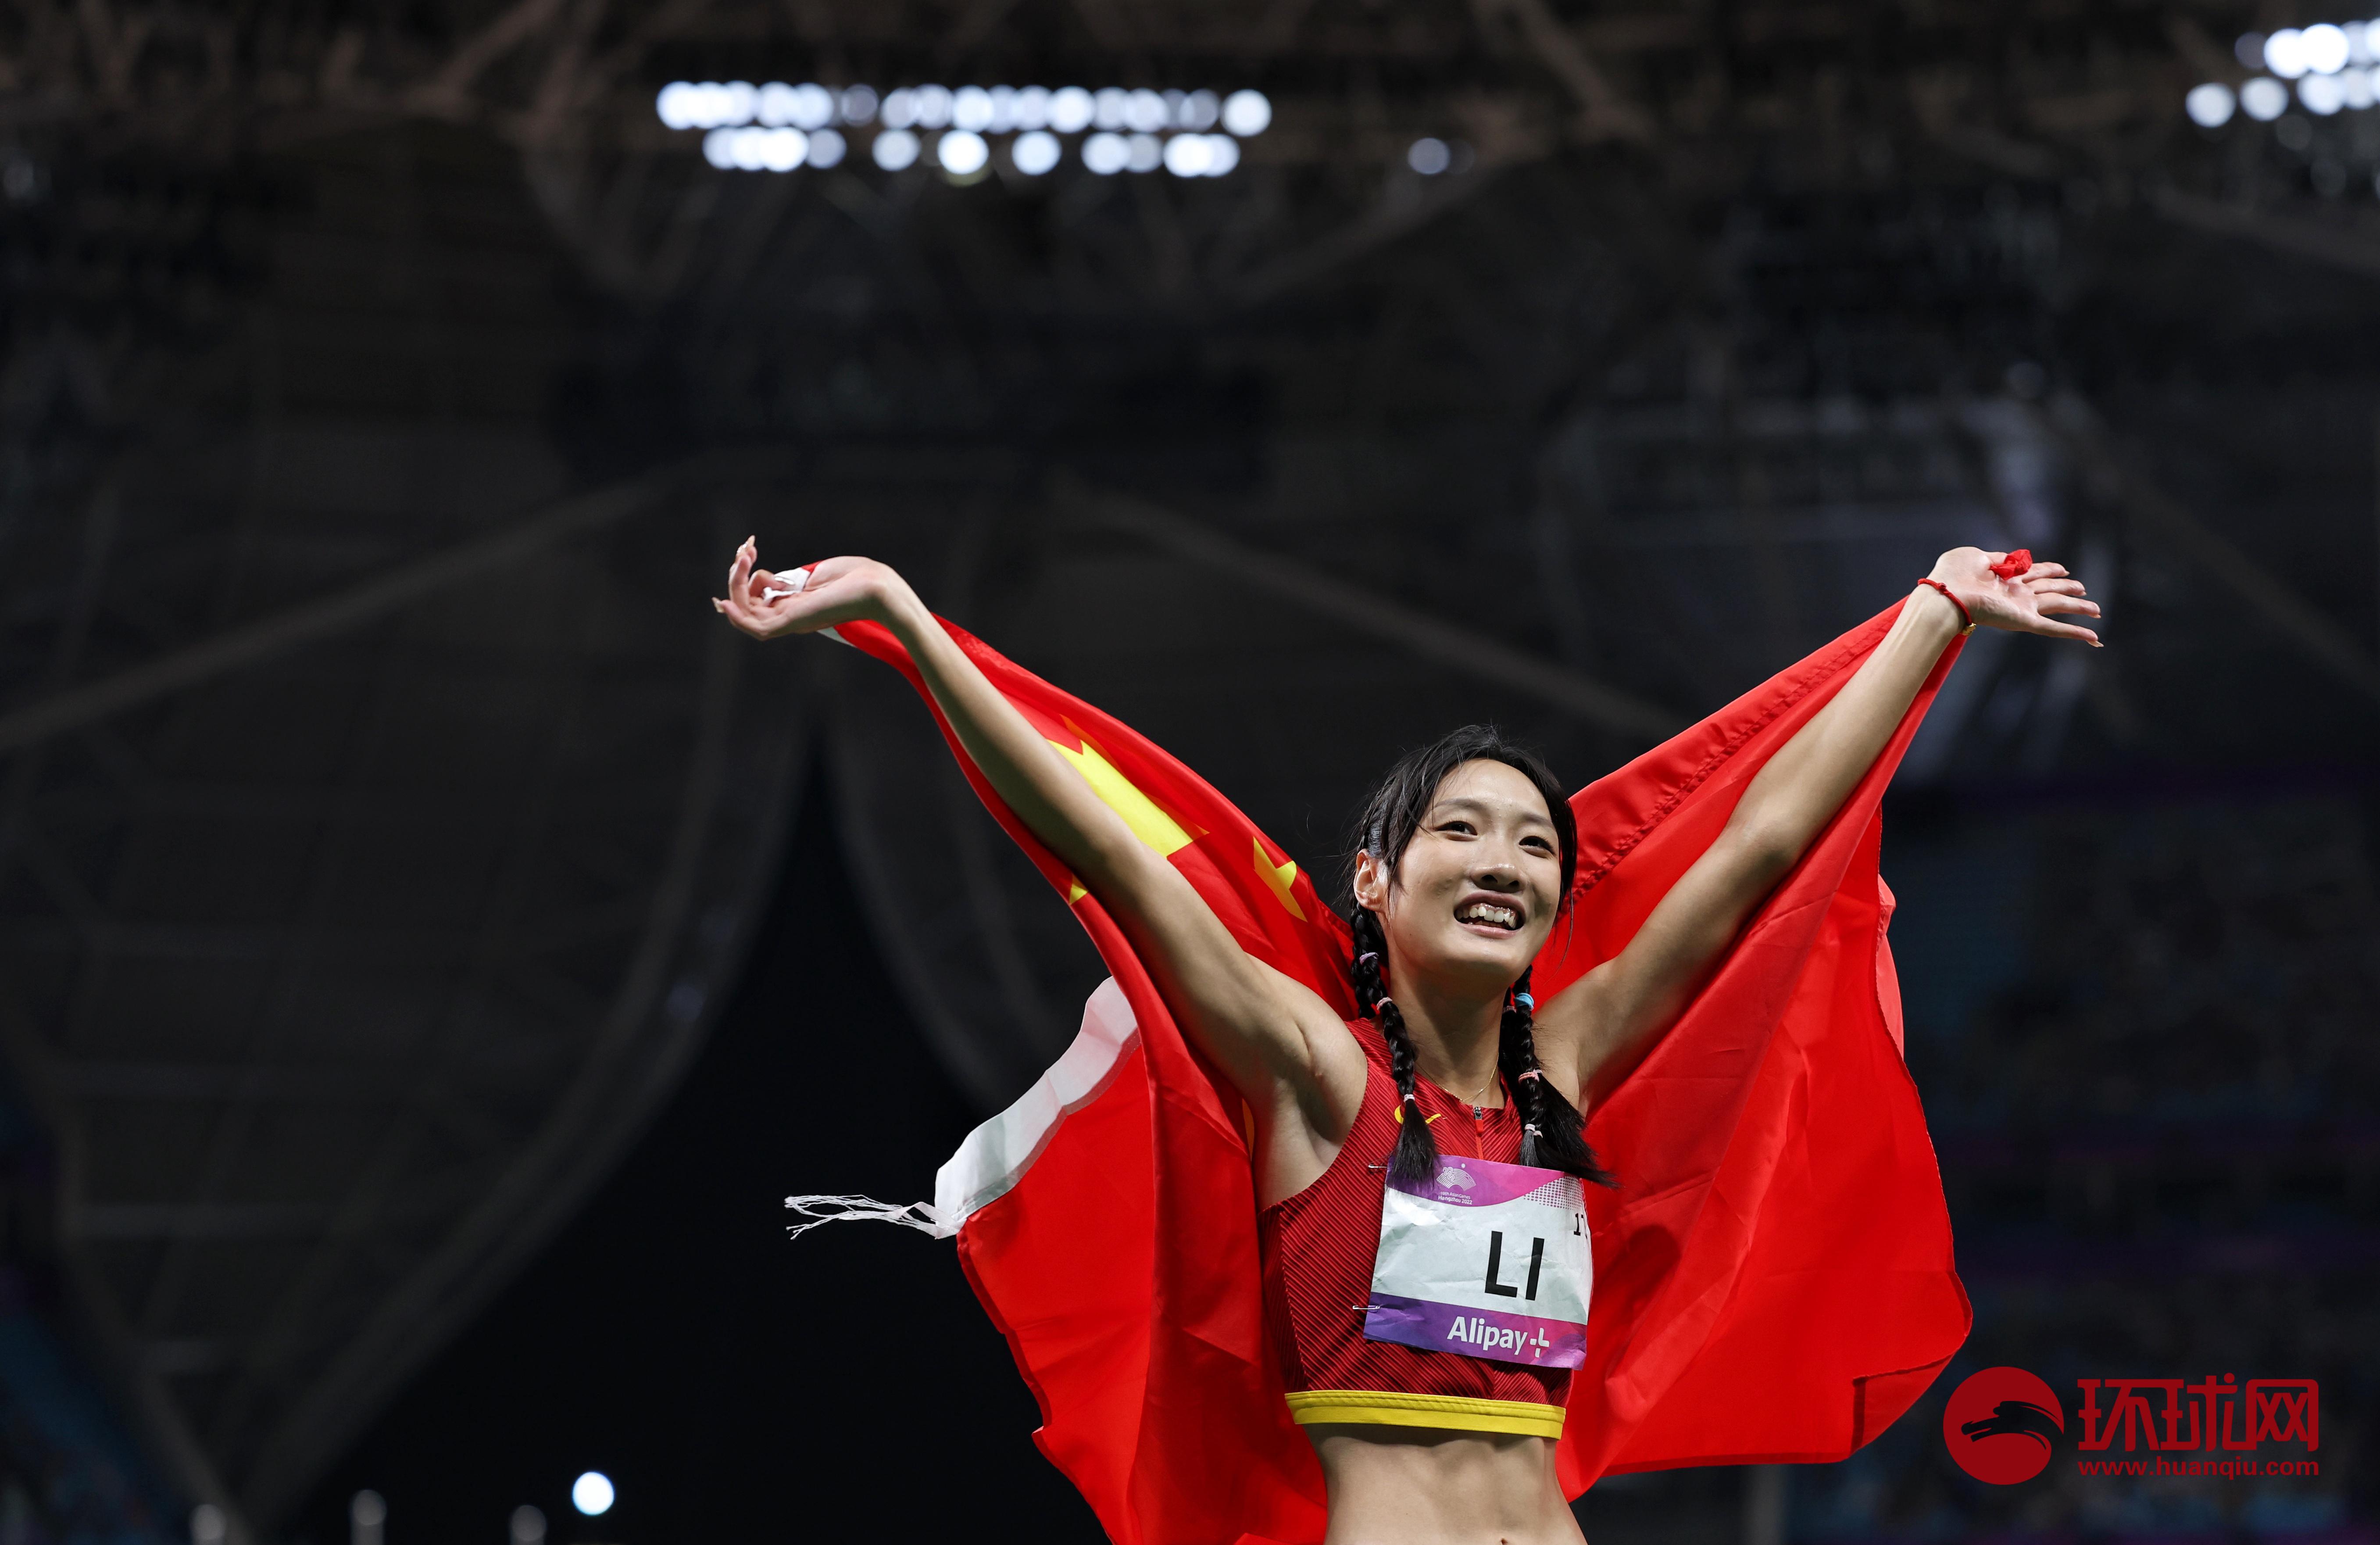 [图集]中国选手李玉婷获得女子200米决赛亚军